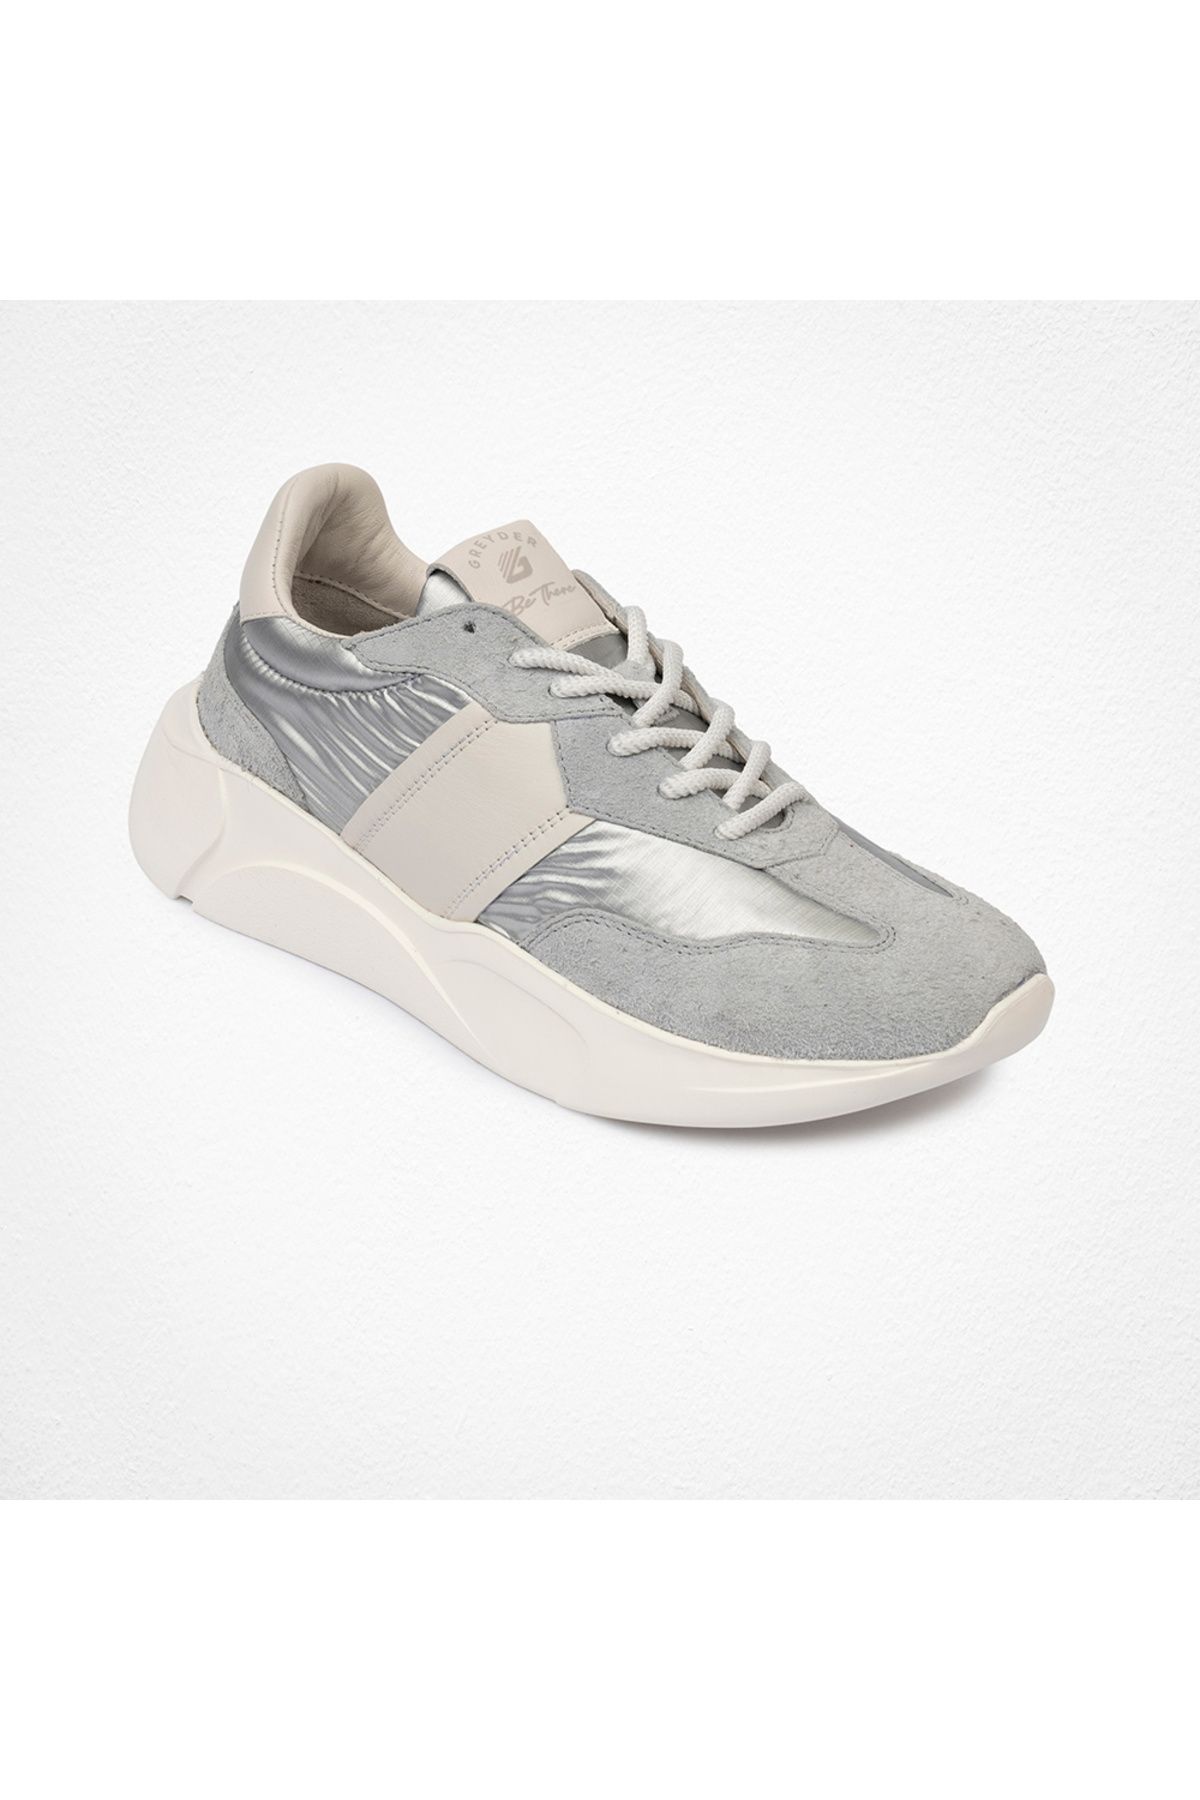 Greyder Kadın Beyaz Gümüş Hakiki Deri Spor Ayakkabı 4y2sa33260